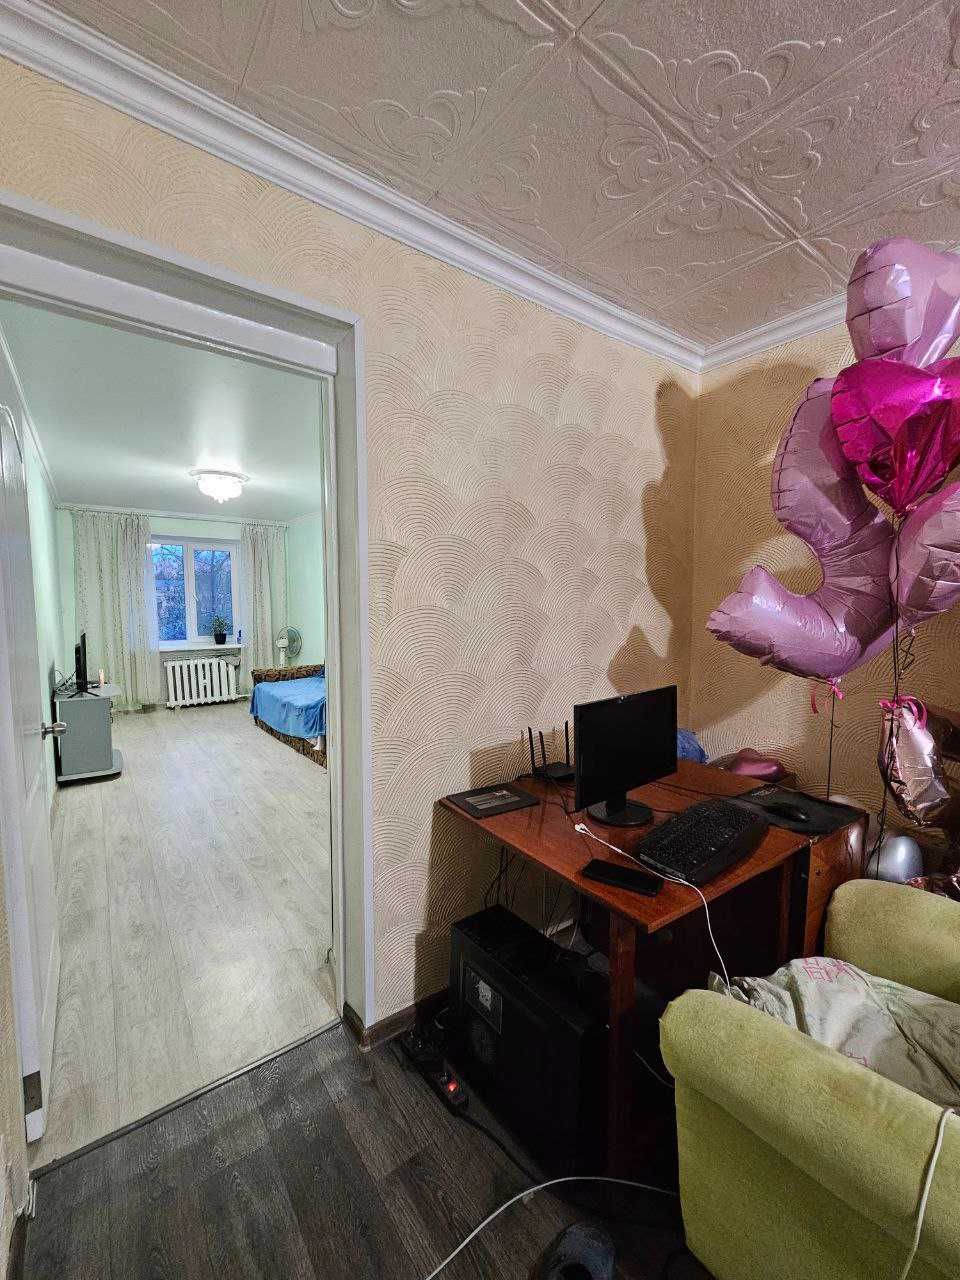 Продается двухкомнатная квартира по ул. Бызова,  р-н "Дзержинки".